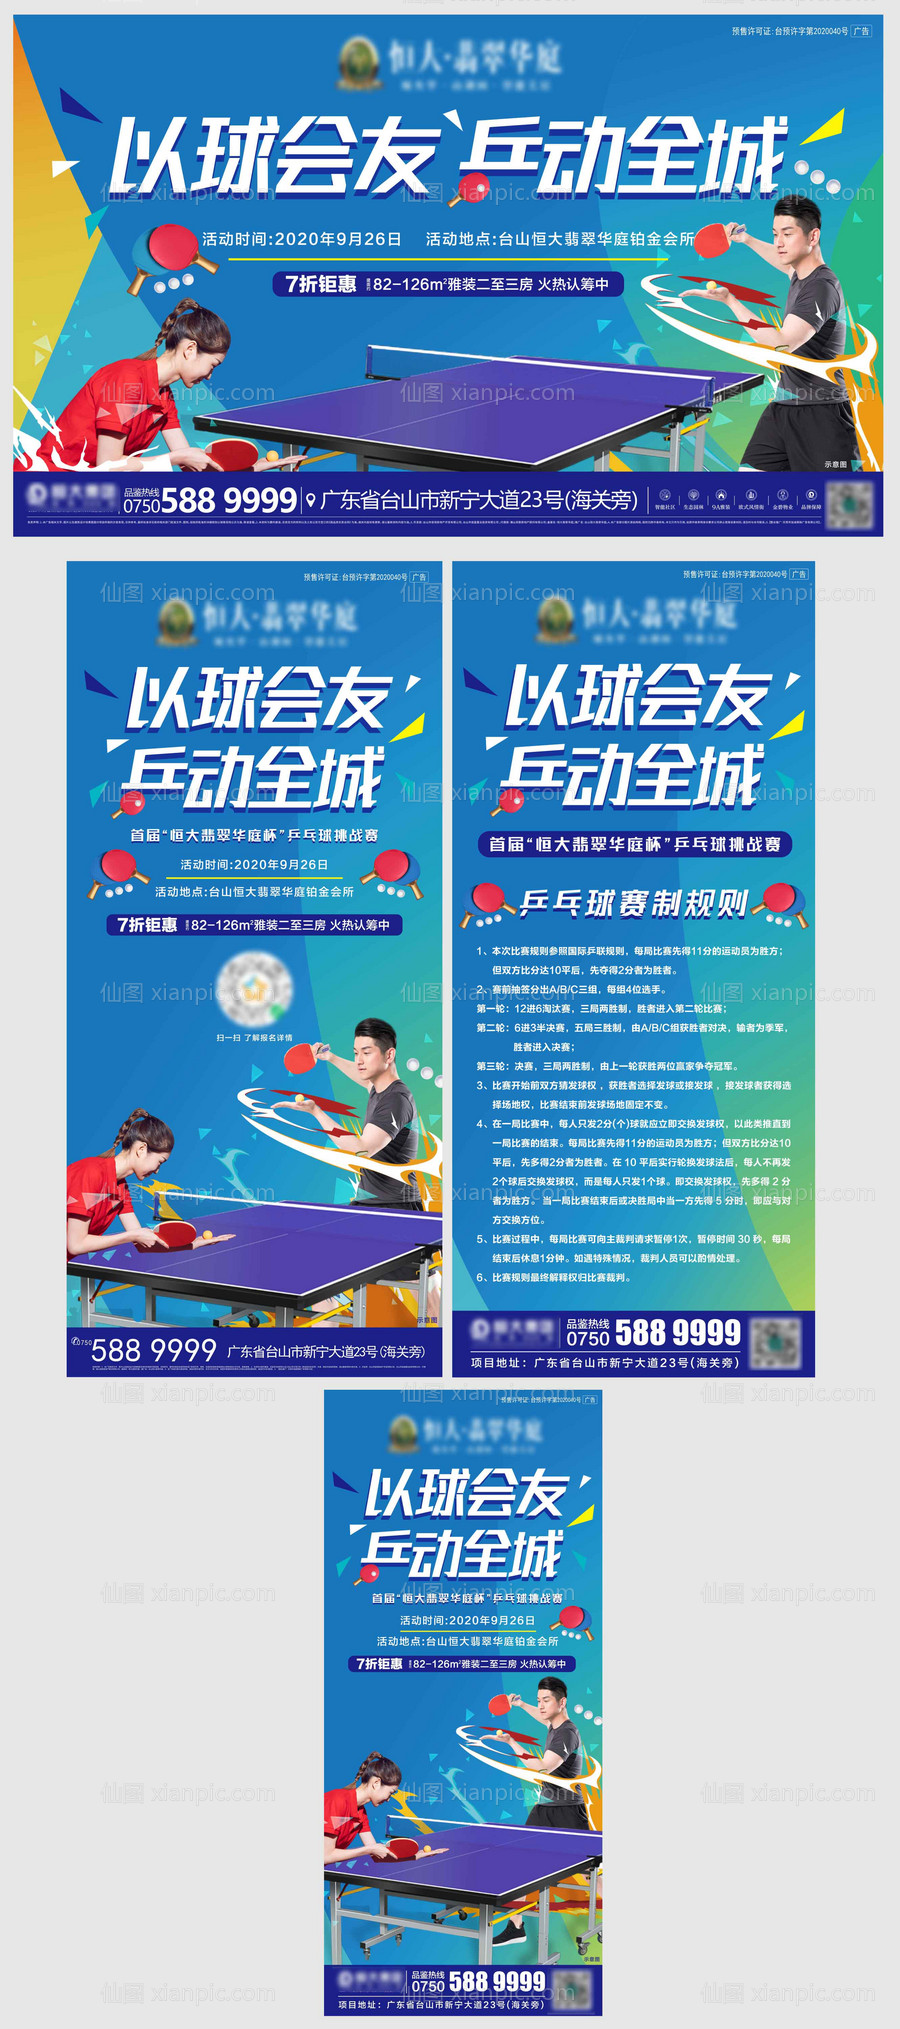 素材乐-地产暖场活动乒乓球比赛活动系列物料